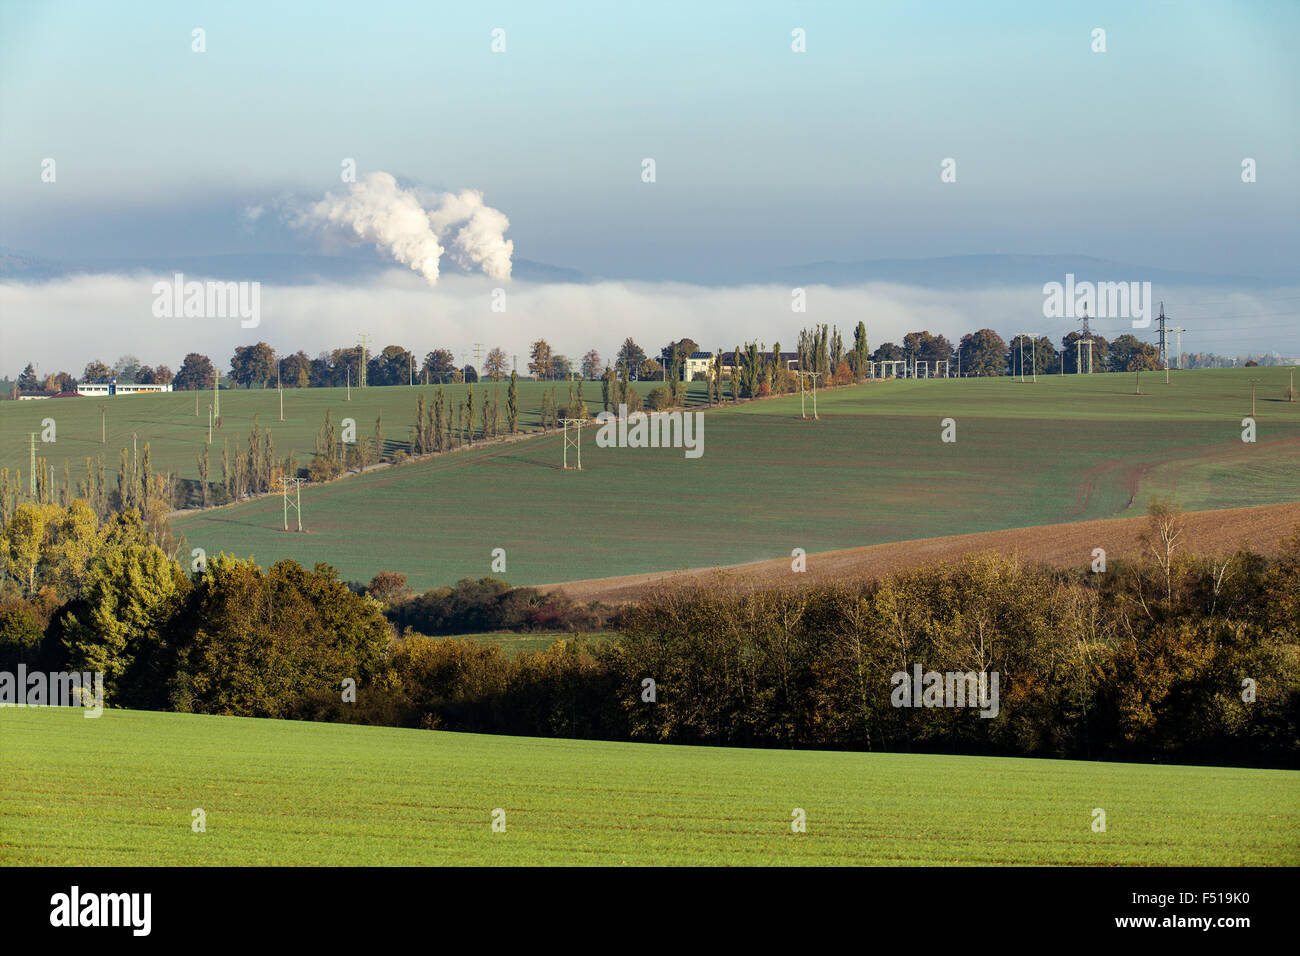 No fumar ecologic chimeneas en desde la fábrica oculta en niebla de la mañana a lo largo de paisaje rural Foto de stock